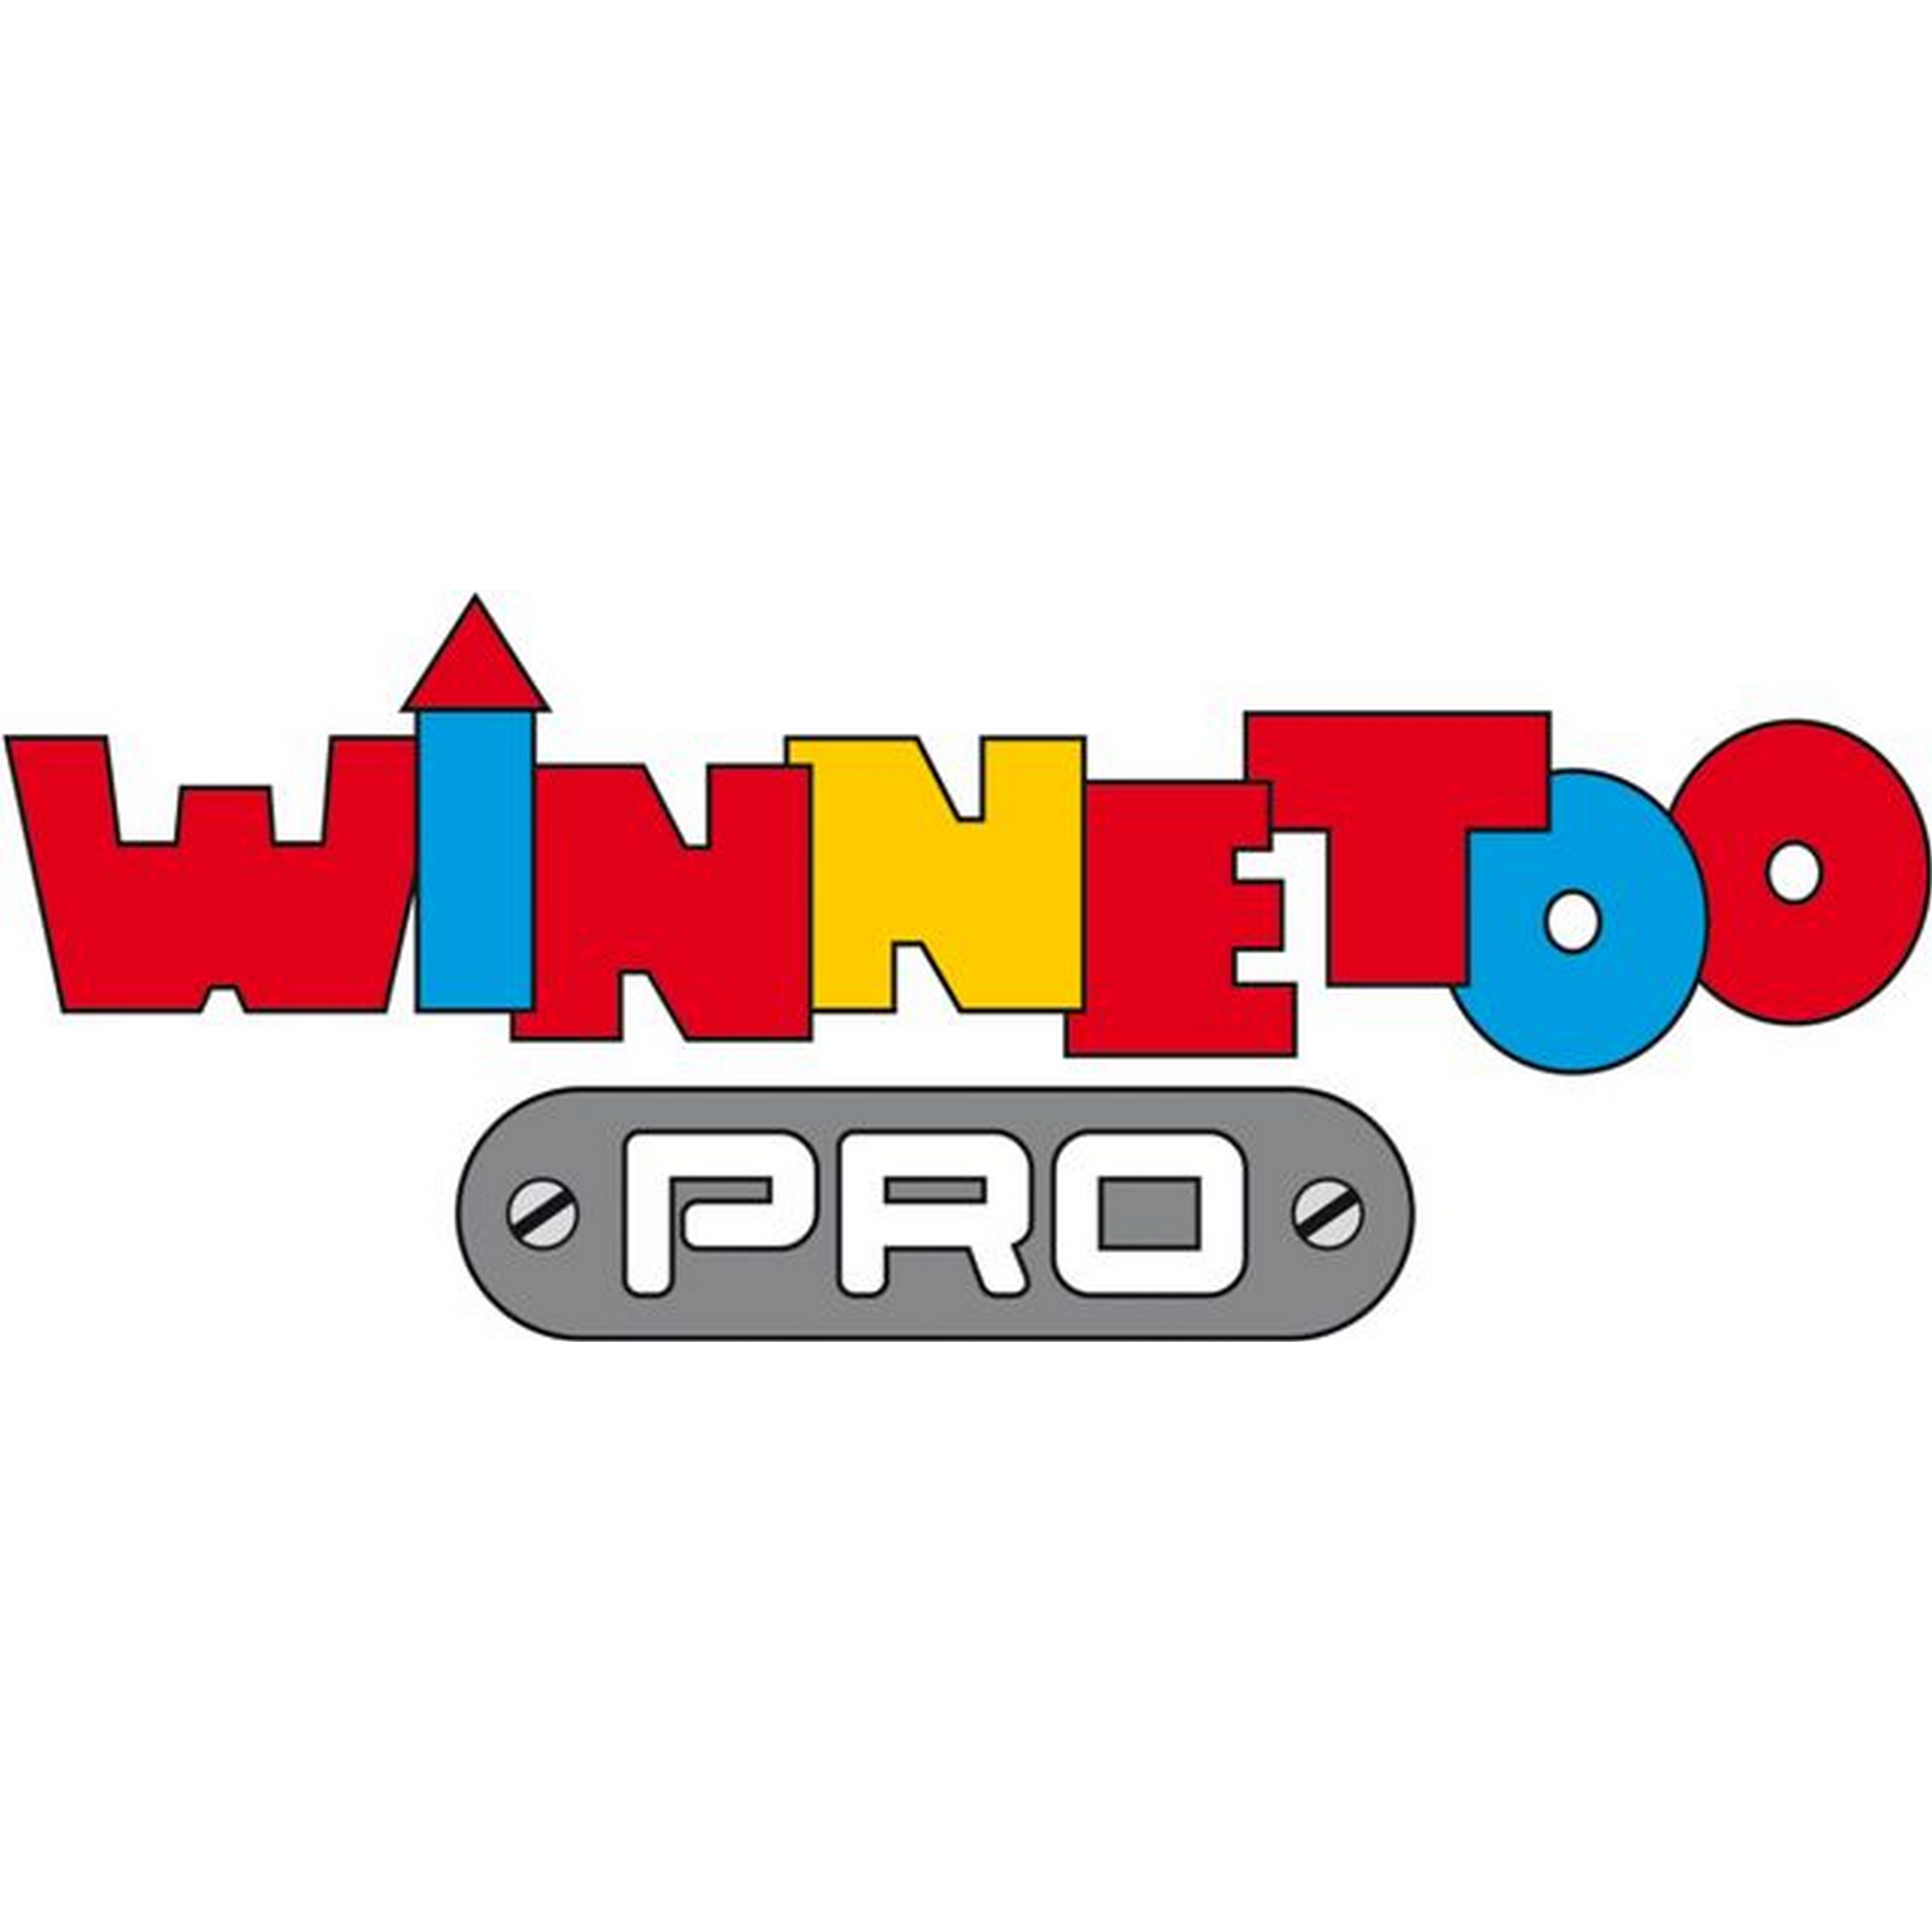 Kletterwand 'Winnetoo Pro' 118 x 140 x 2 cm, für Brücke unten + product picture